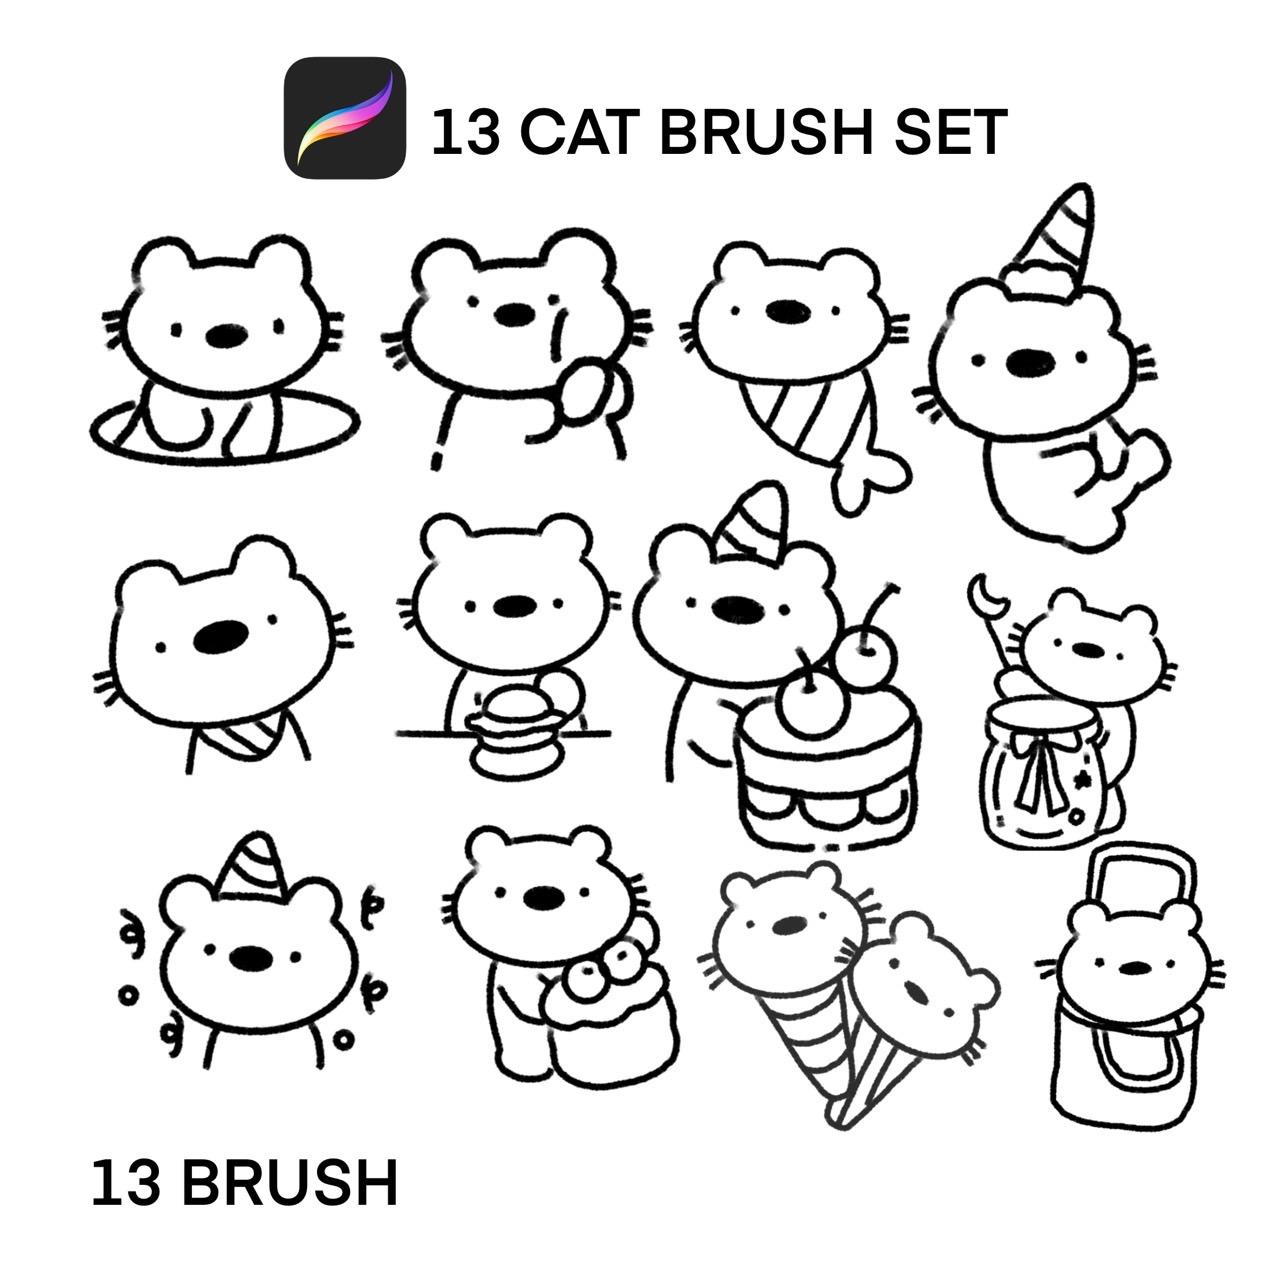 13 CAT BRUSH SET